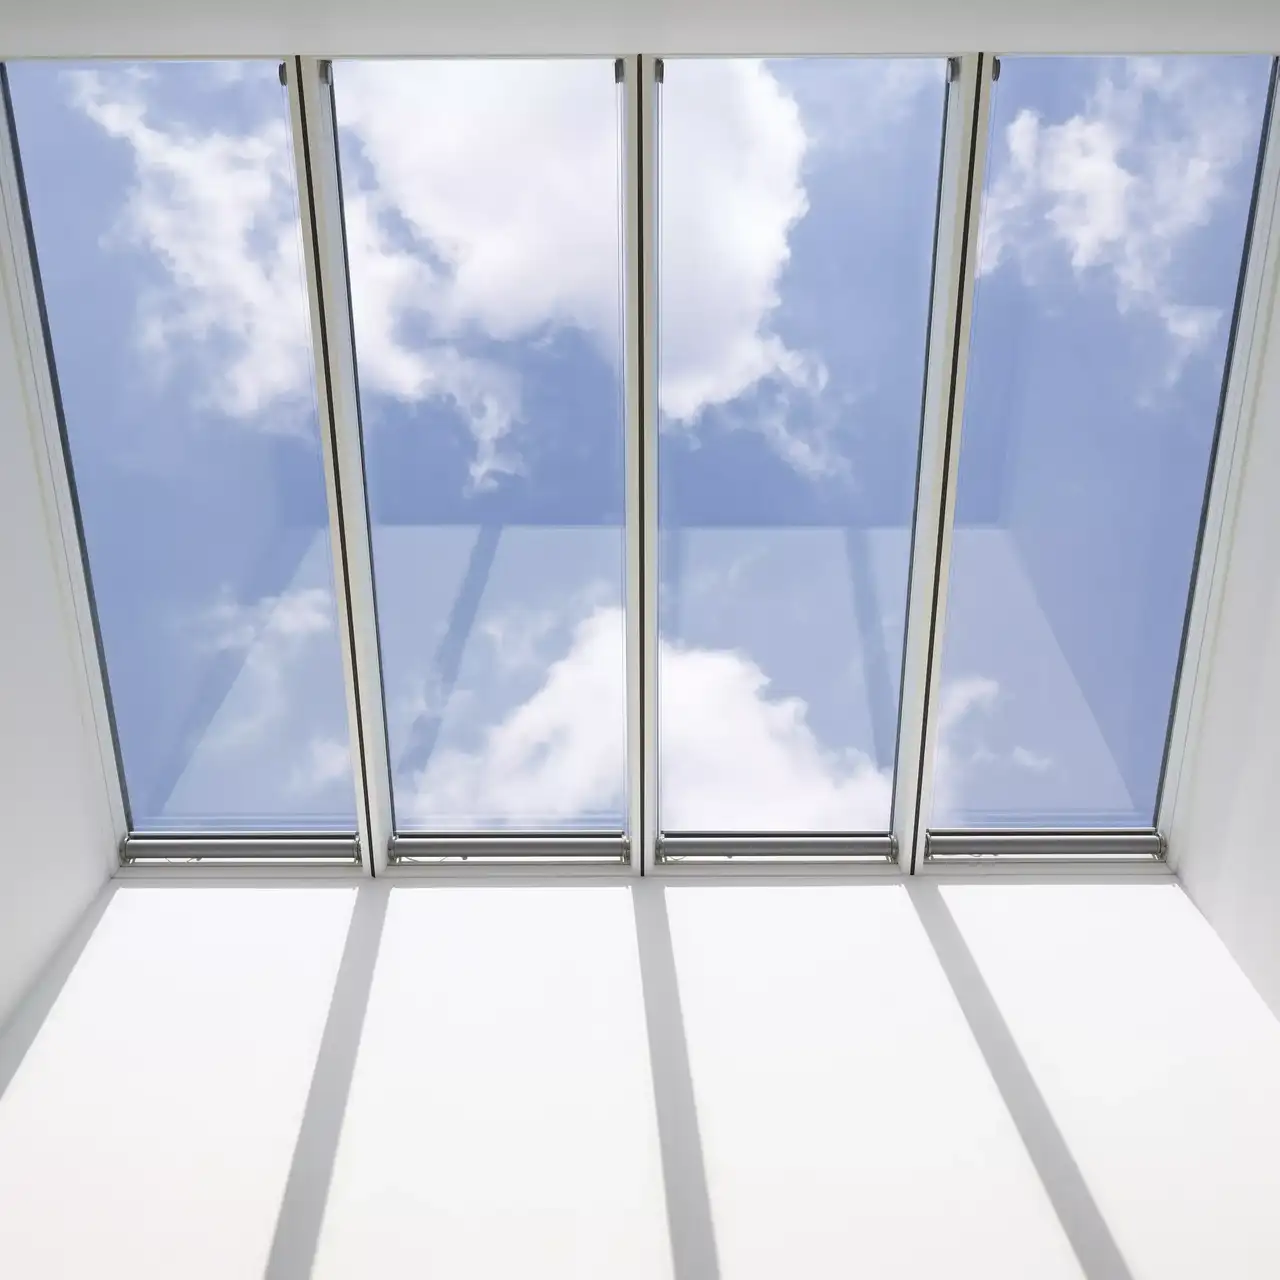 Innenansicht eines VELUX Dachflächenfensters mit blauem Himmel und Wolken, die sich spiegeln.